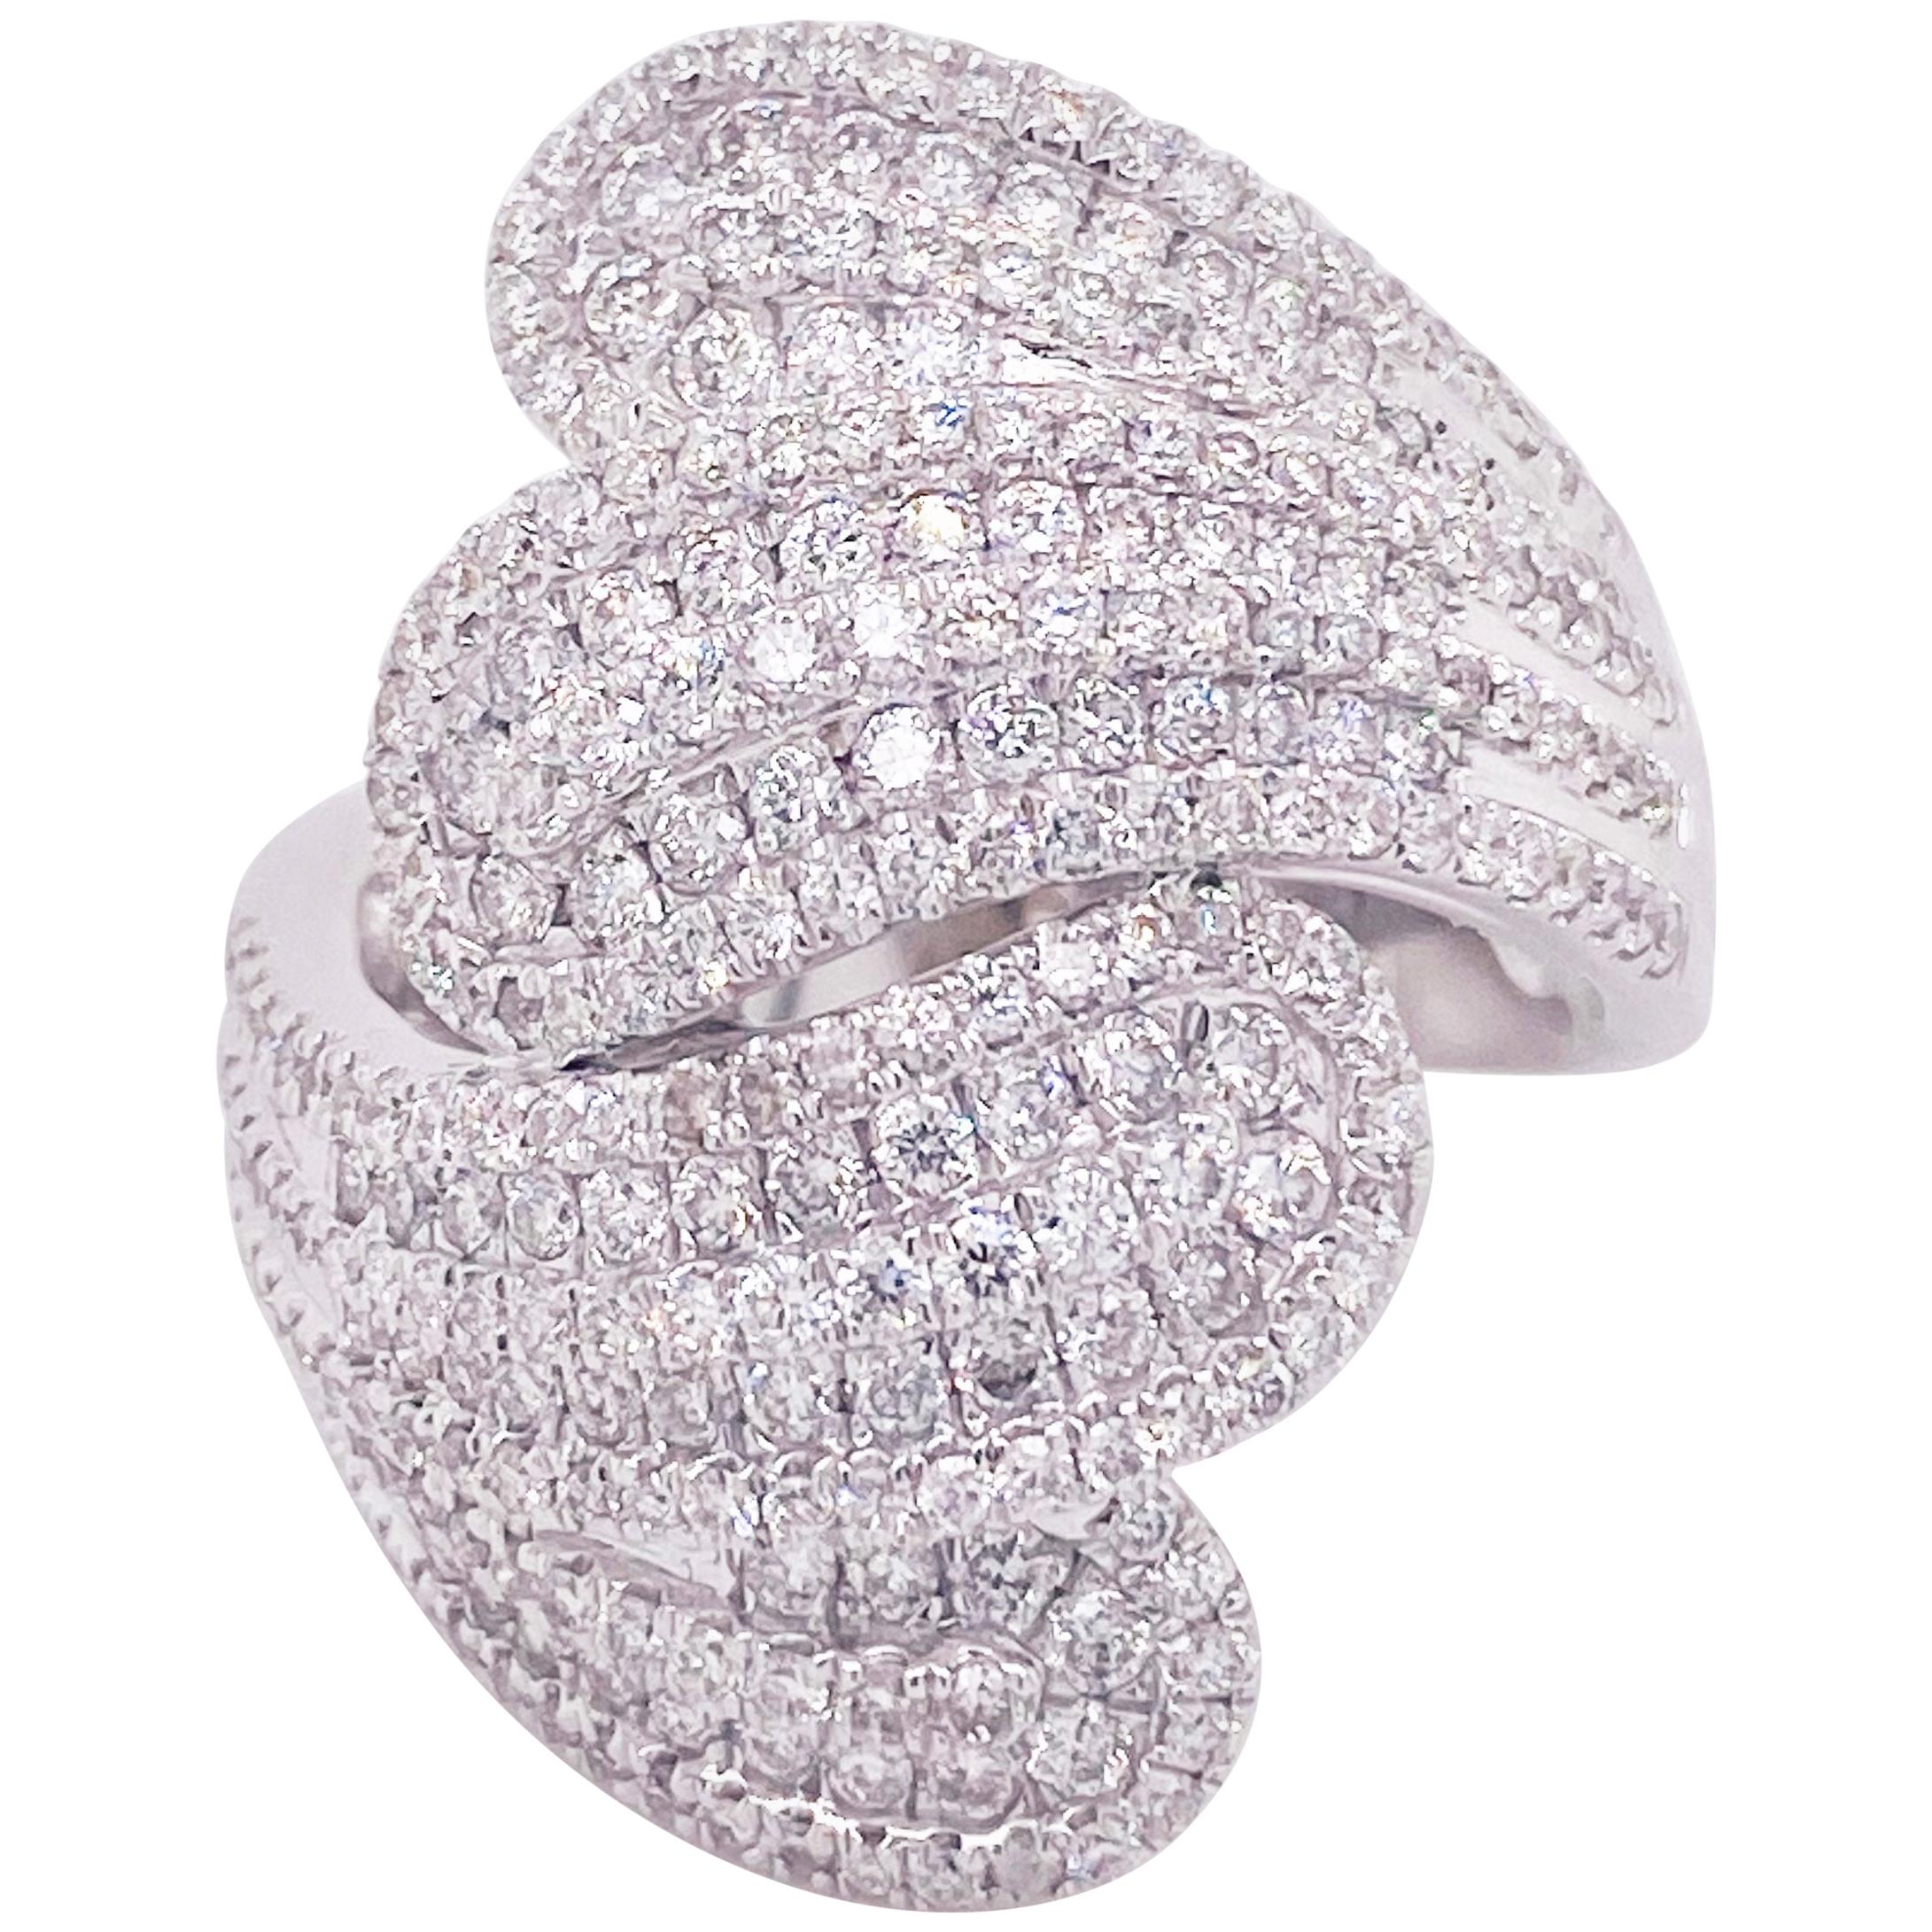 Diamant-Statement-Ring, durchsichtiges 14 Karat Weißgold, Bombe, Mode-Ring, Bypass